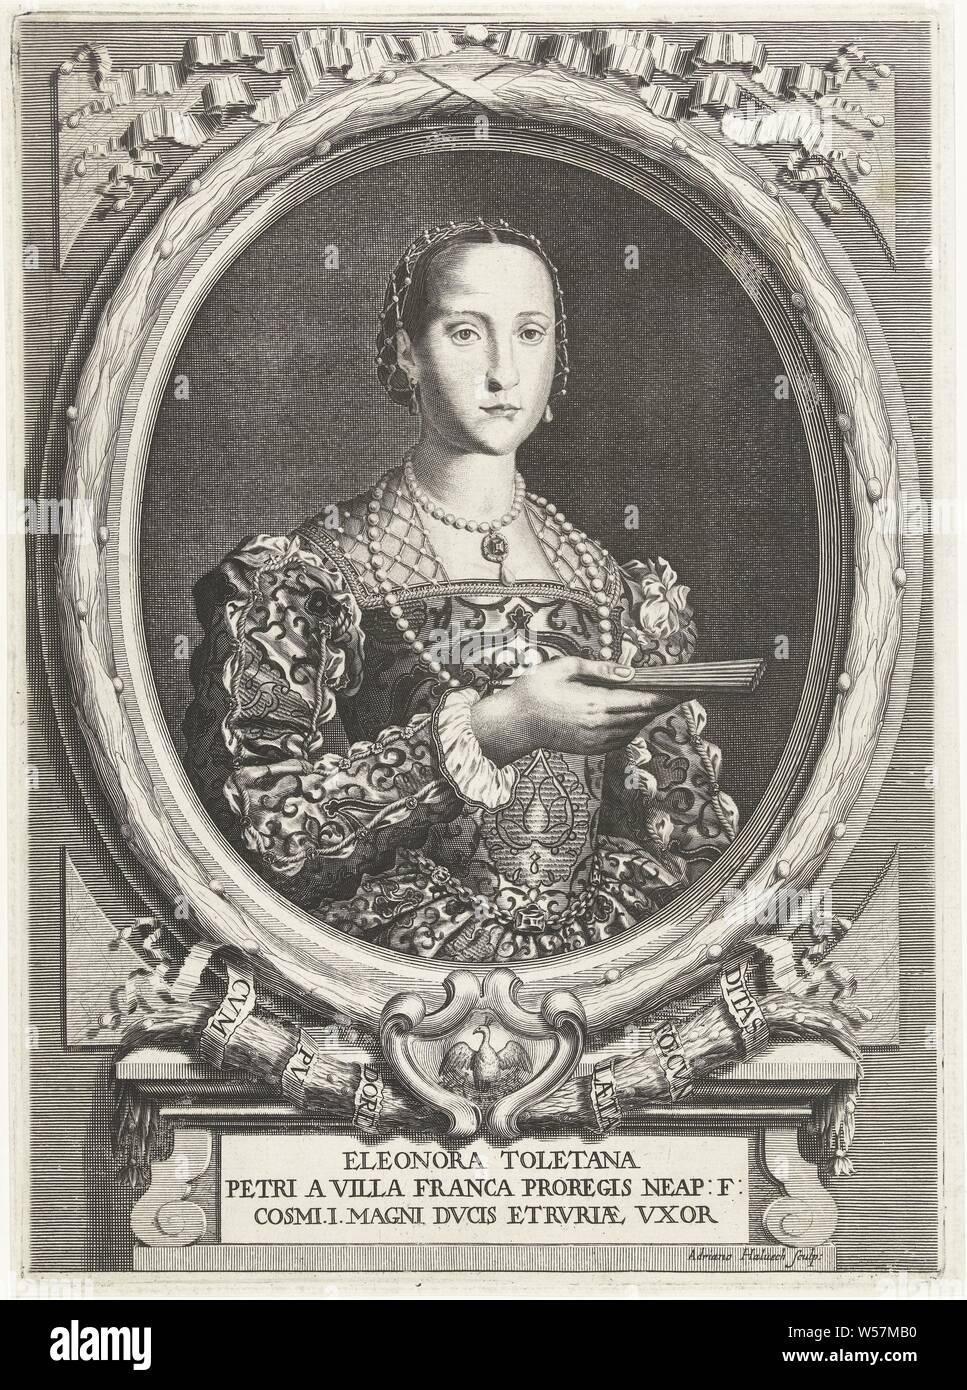 Portrait von Eleonora von Toledo Porträts der De' Medici (Titel der Serie), Brustbild nach rechts von Eleonora von Toledo, Großherzogin von Toskana und Frau von Cosimo I, mit in ihre Hand, um eine gefaltete Ventilator, in ein Oval mit einem Lorbeerkranz umgeben. An der Unterseite in einer Kartusche ein Pfau mit Küken, unten auf einem Tablett unter einem Sockel ihr Name und zwei Linien in Lateinamerika, Ventilator, Perle, Perle Halskette (Kleidungsstücke), Zubehör (Kleidung), Cosimo I. de' Medici, Eleonora von Toledo, Adriaen Haelwegh (auf Objekt erwähnt), der Nördlichen Niederlande, C. 1647 - C. 1696, Papier, Gravur, H 347 mm x B 252 mm Stockfoto